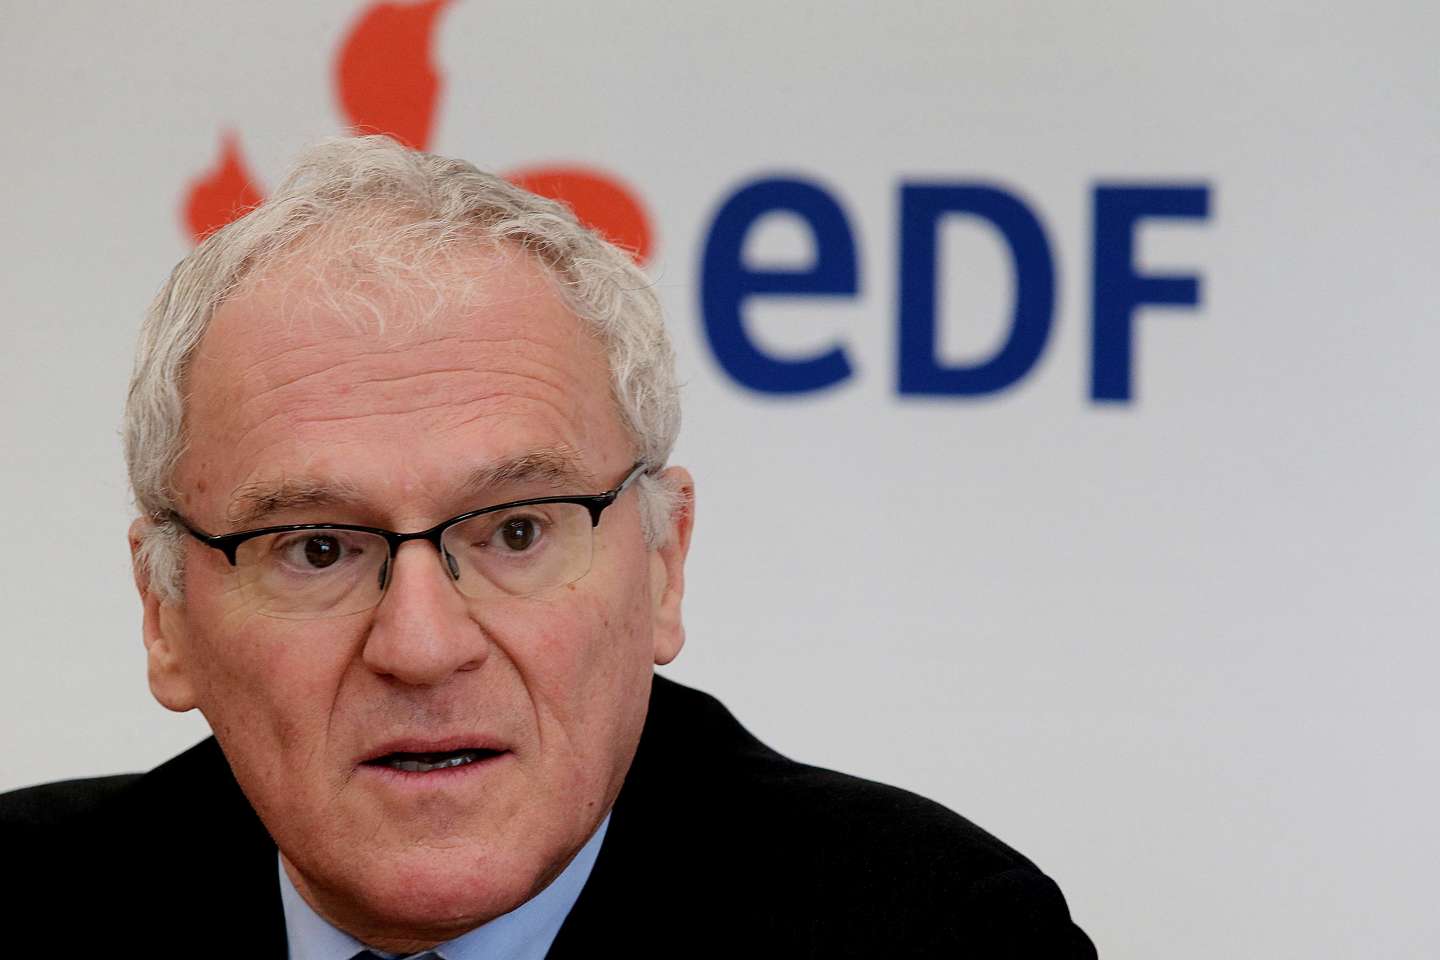 EDF : le gouvernement veut avancer vite sur la succession de Jean-Bernard Lévy